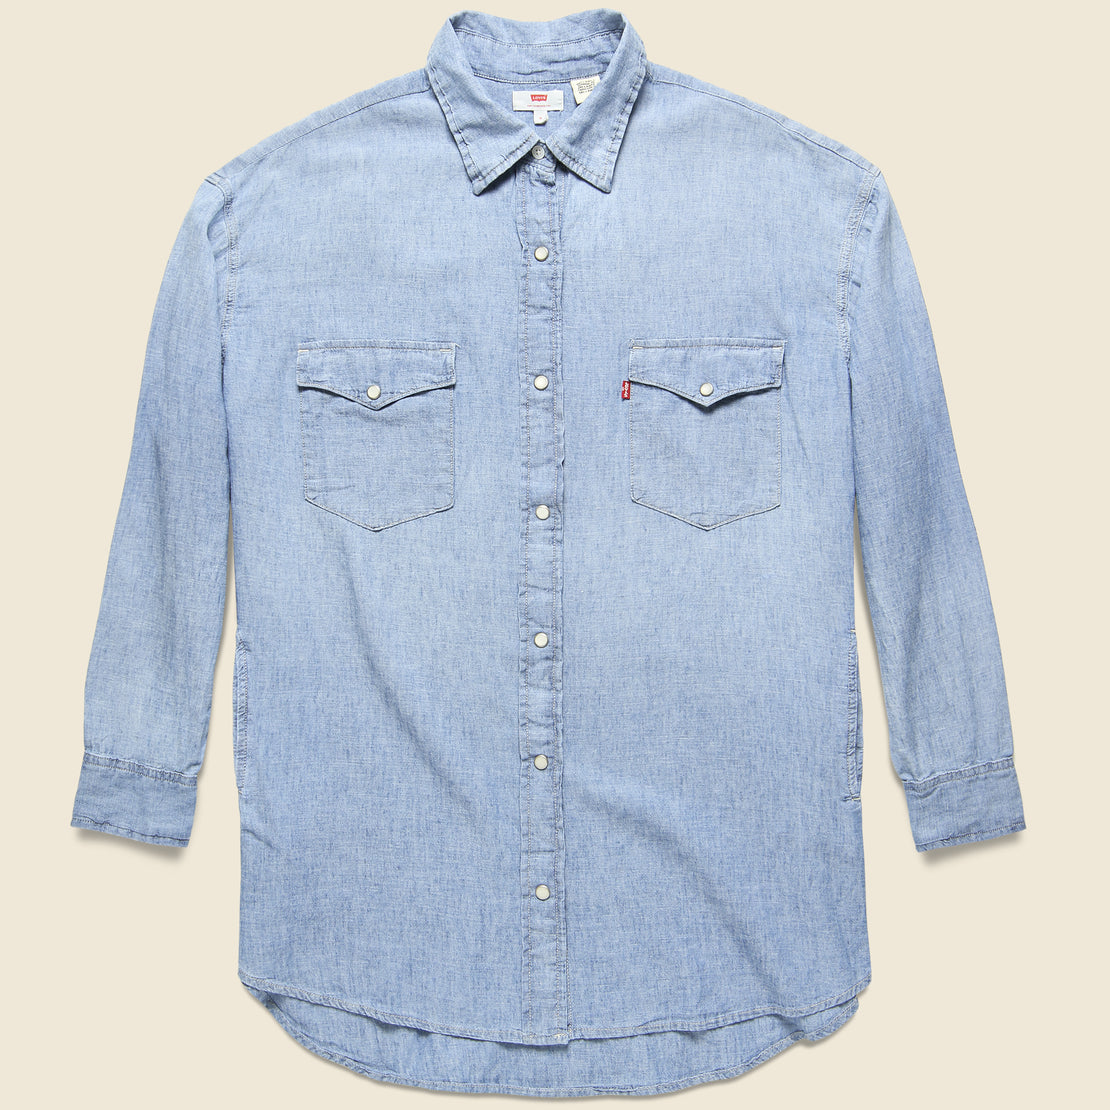 Levis Premium Cotton/Linen Shirt - Crystal Ball